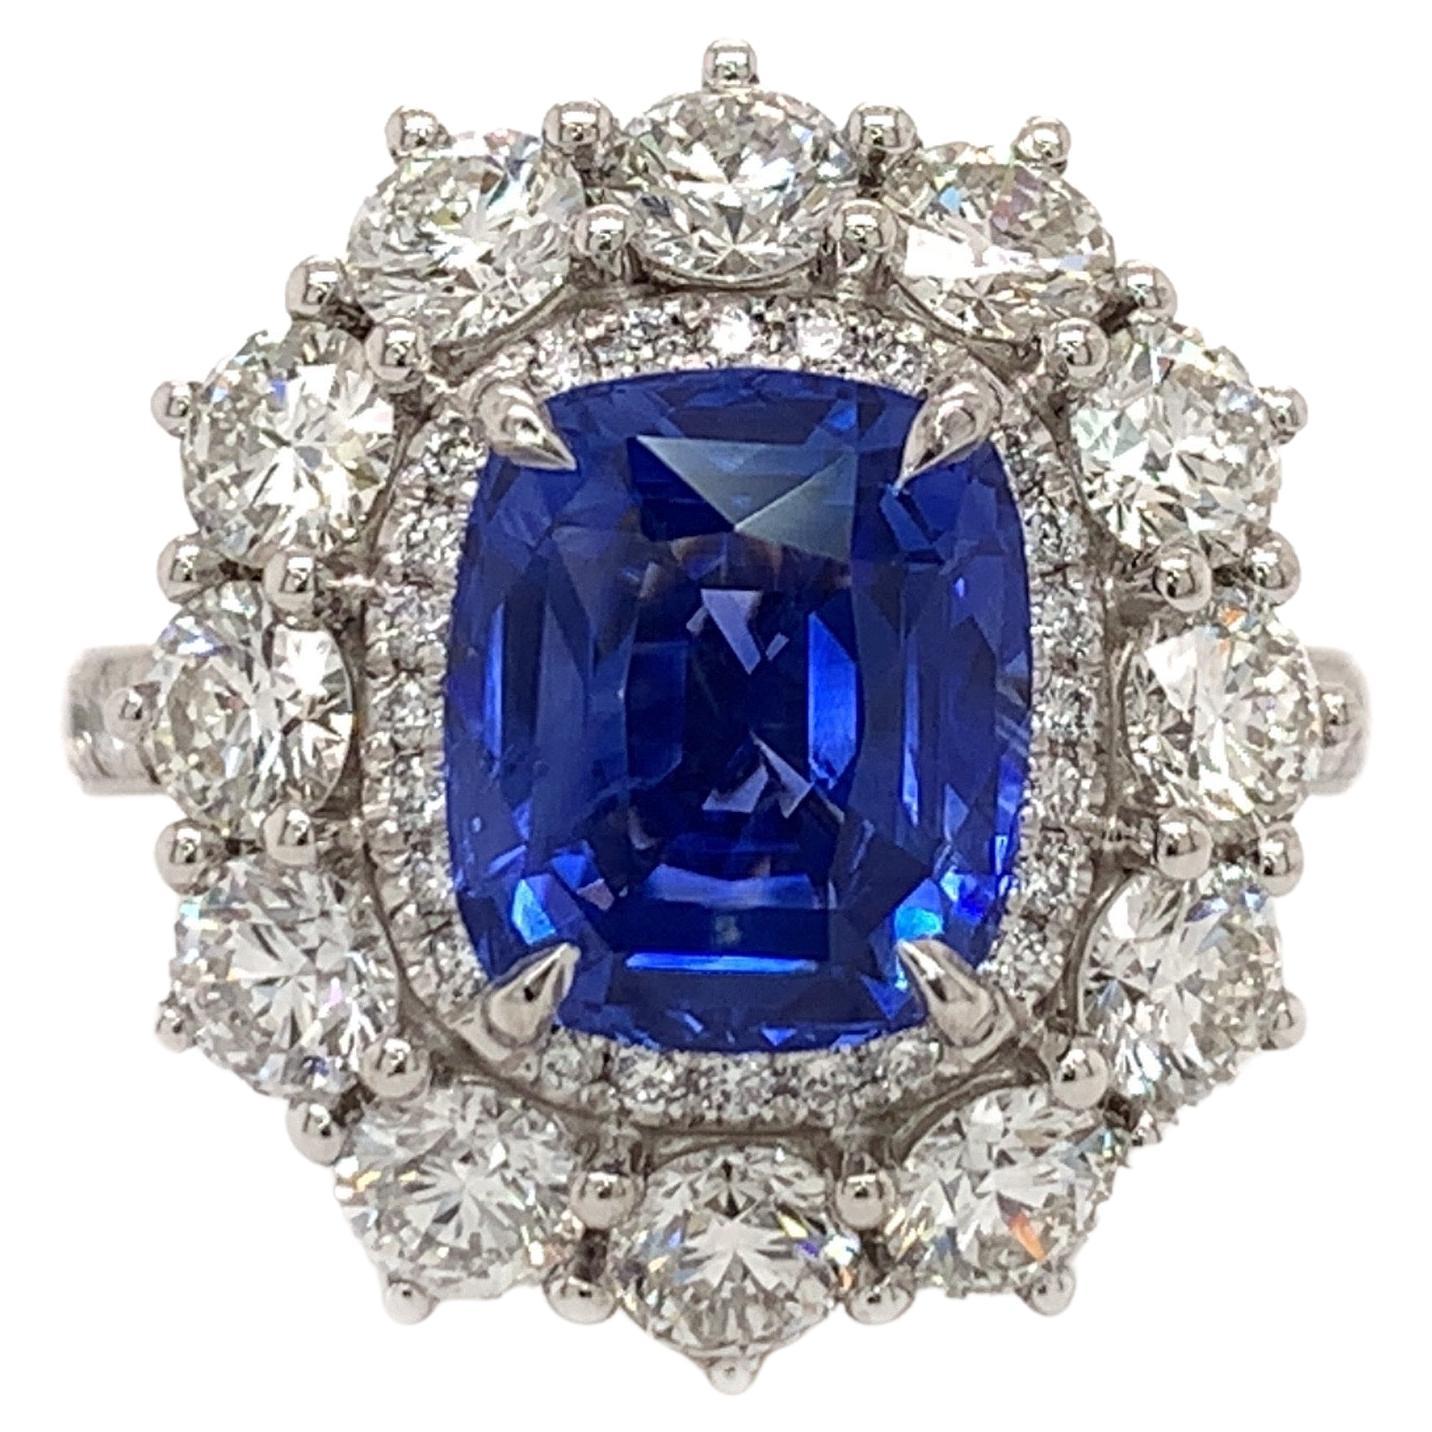 3.53 Carat Sapphire Diamond Ring